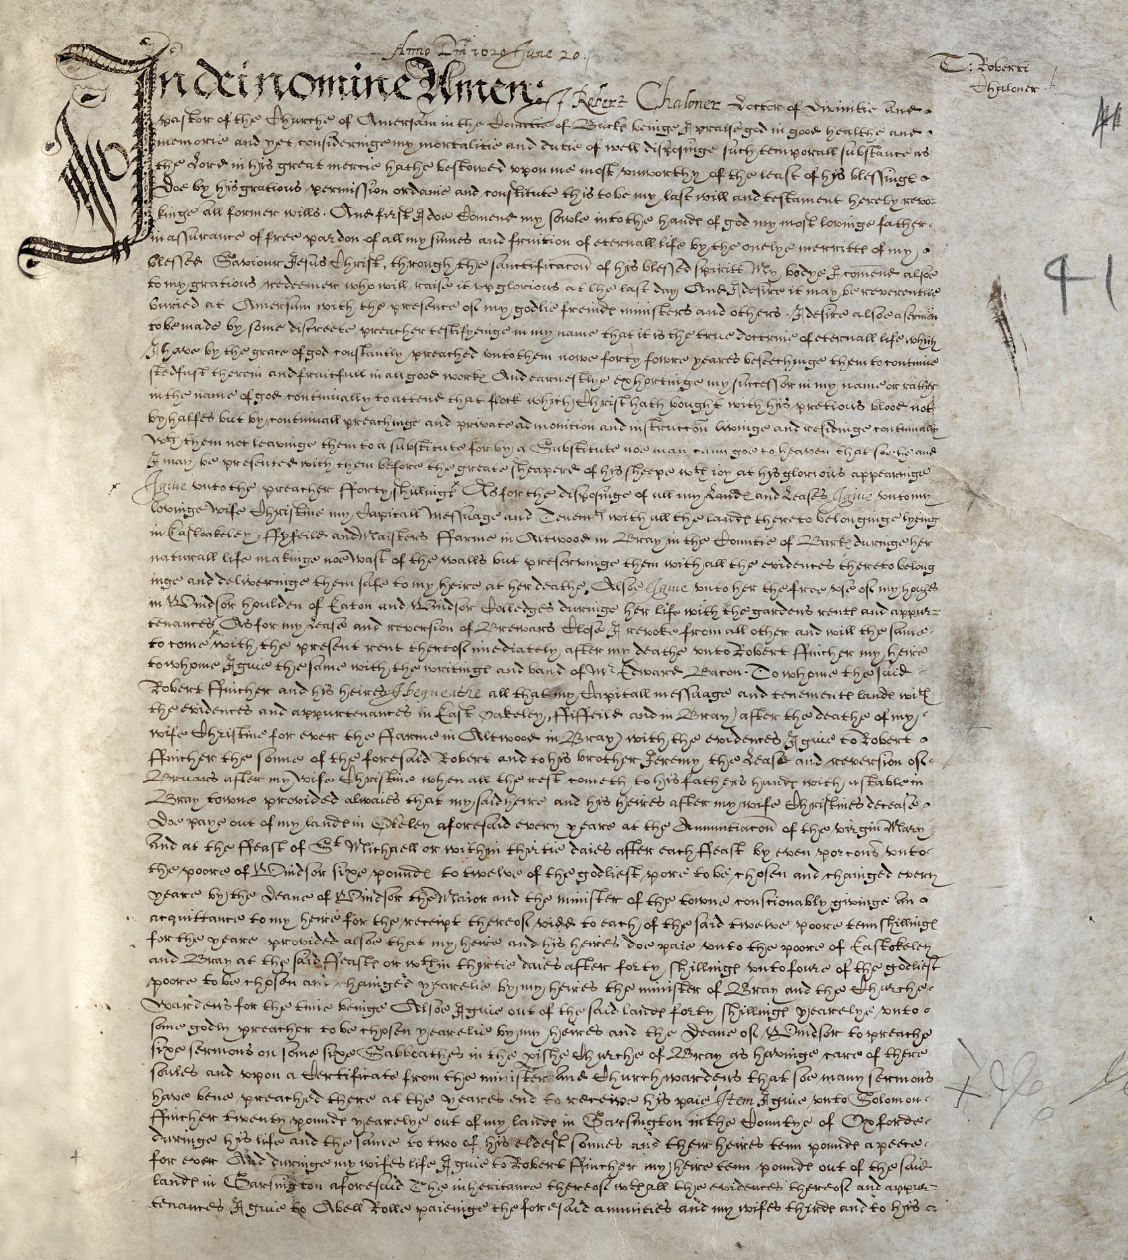 Robert Chaloner's will, dated 20 June 1620